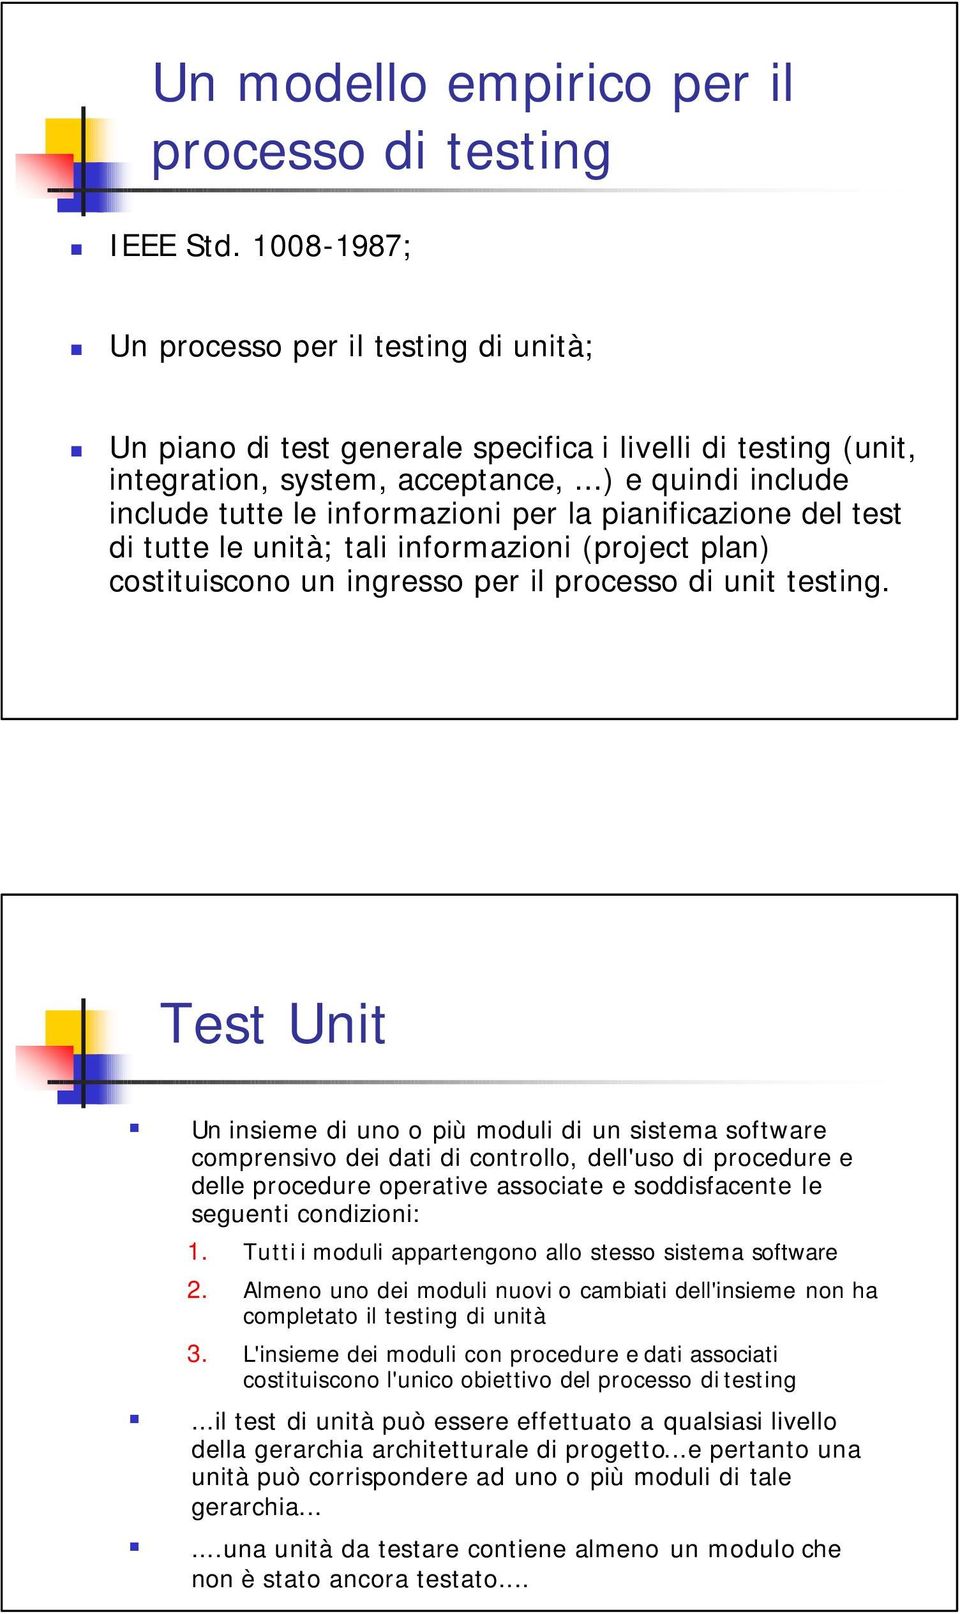 ..) e quindi include include tutte le informazioni per la pianificazione del test di tutte le unità; tali informazioni (project plan) costituiscono un ingresso per il processo di unit testing.